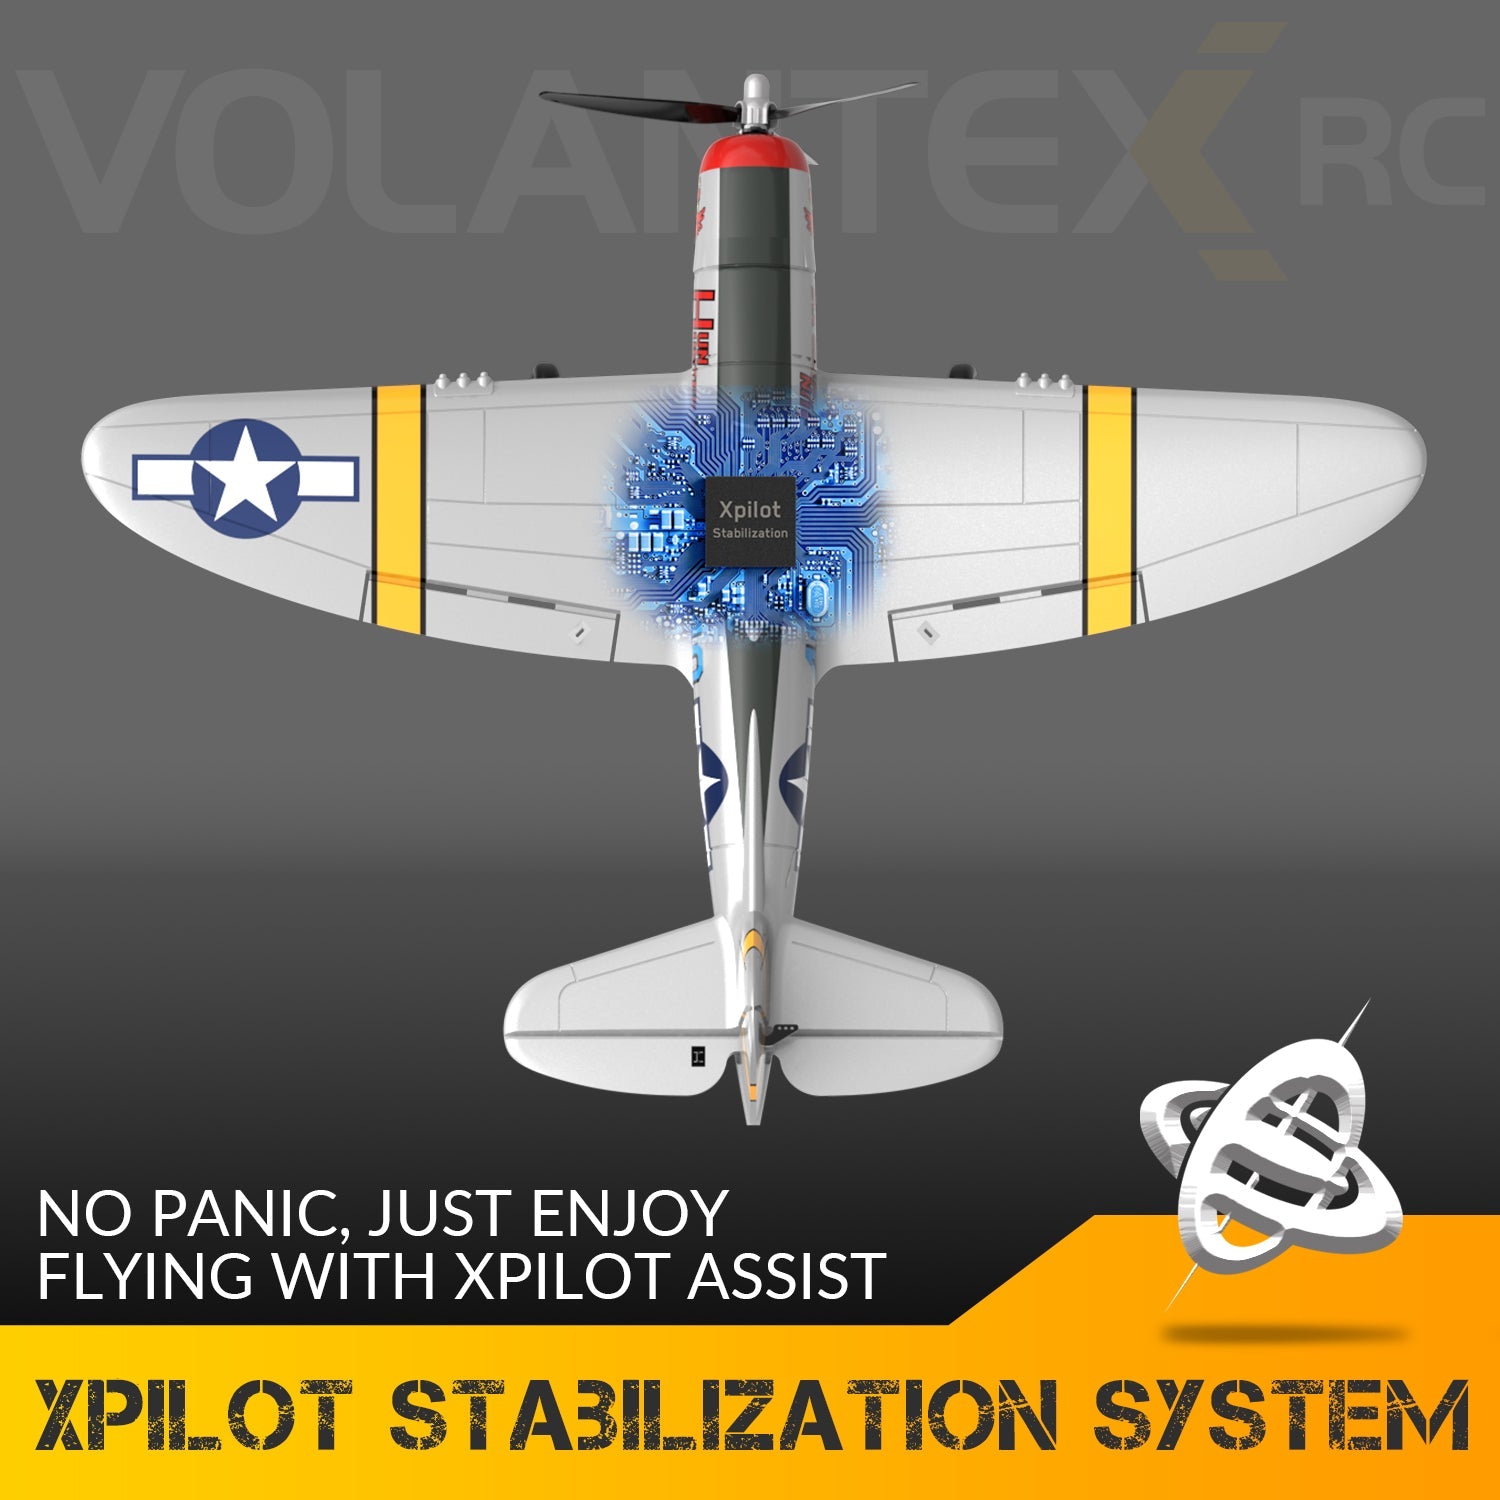 VOLANTEXRC Spitfire 4-CH Avion télécommandé prêt à voler pour débutants avec système de stabilisation Xpilot (761-12) RTF